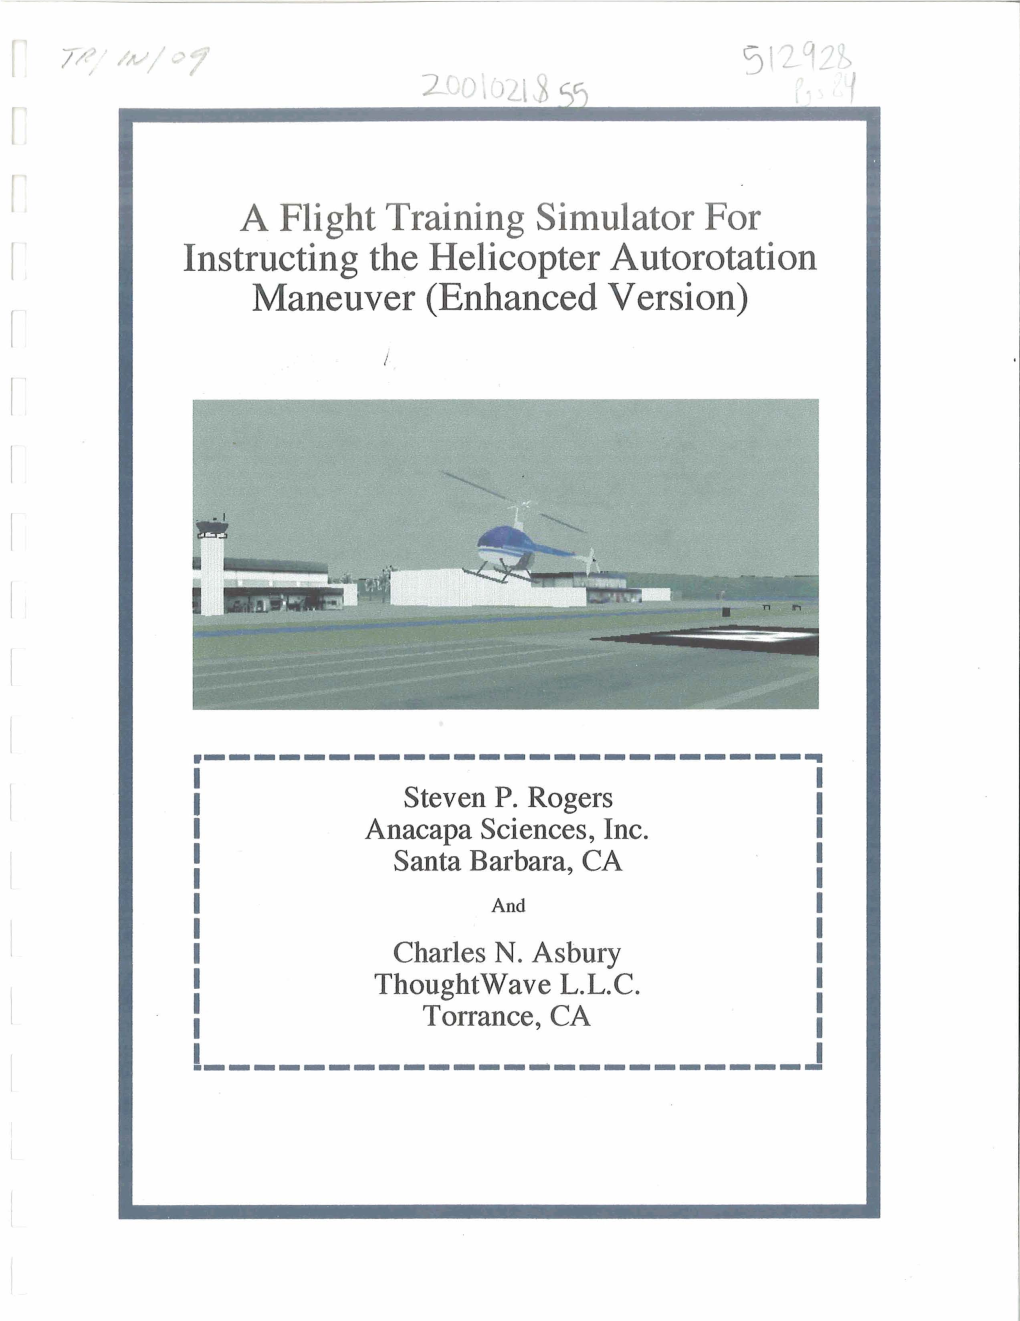 A Flight Training Simulator for Maneuver